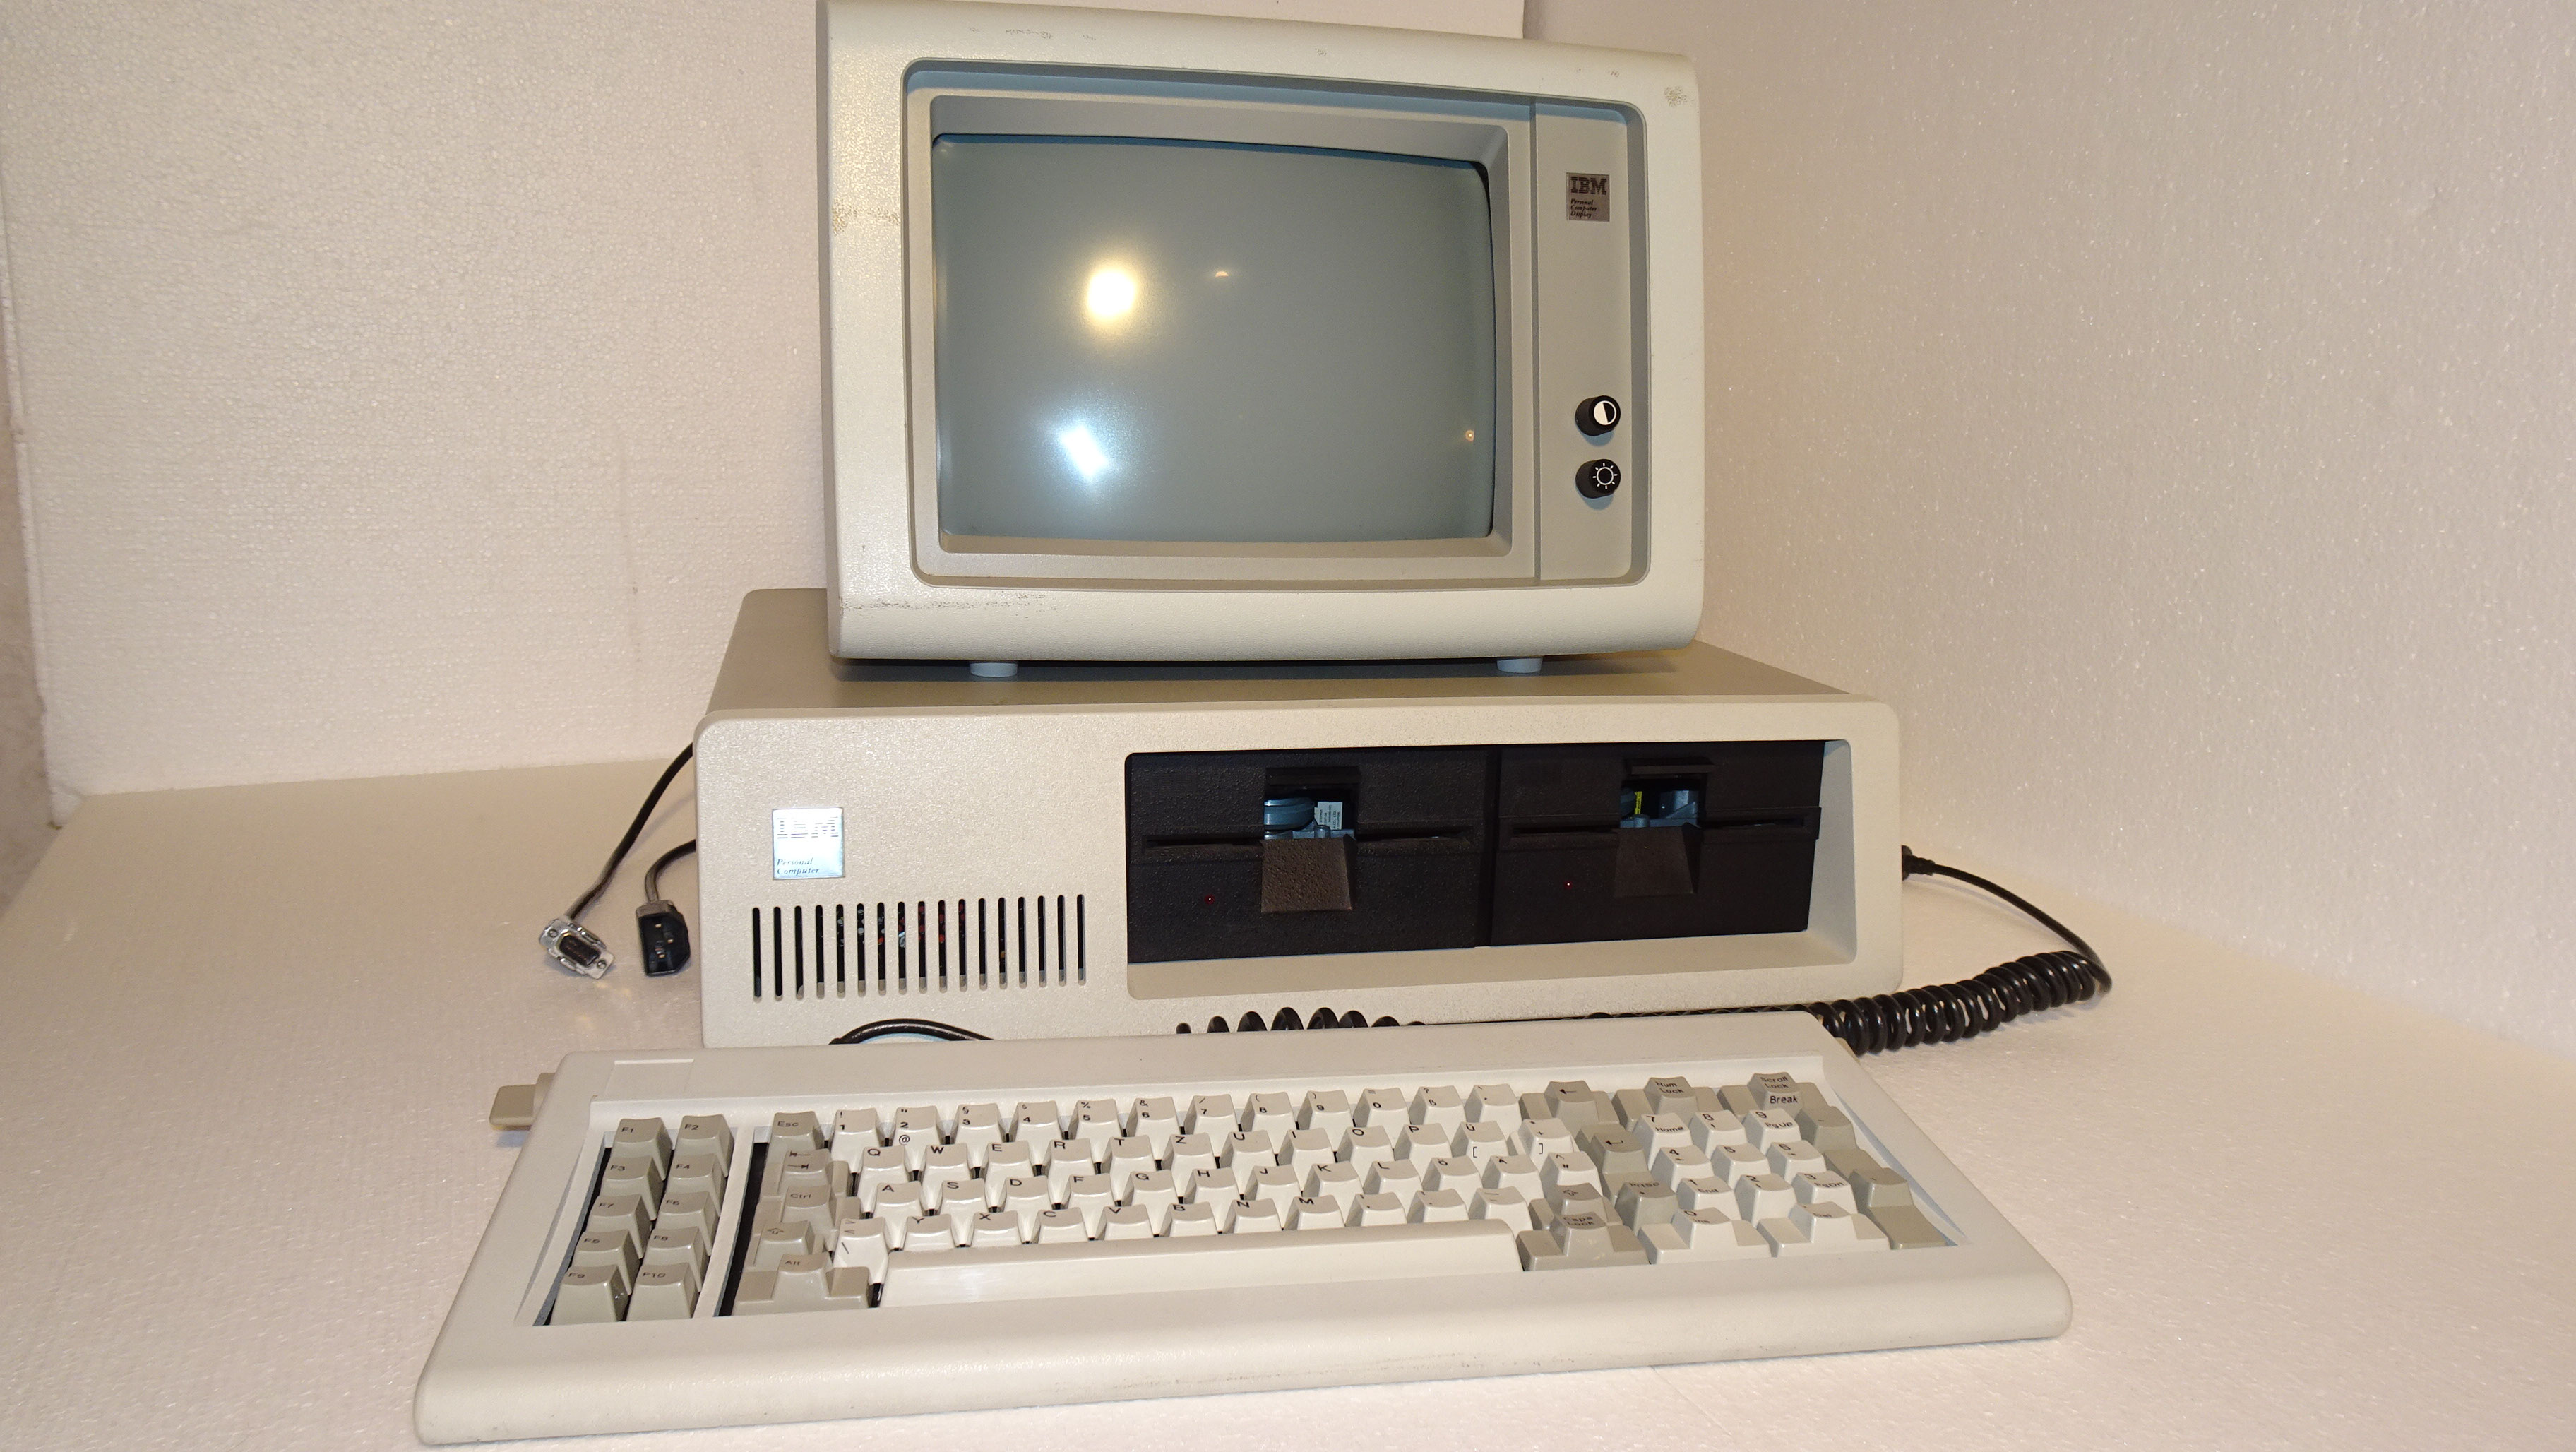 Neuzugang: IBM 5150 - Der erste "PC" - Yesterchips - Museum für